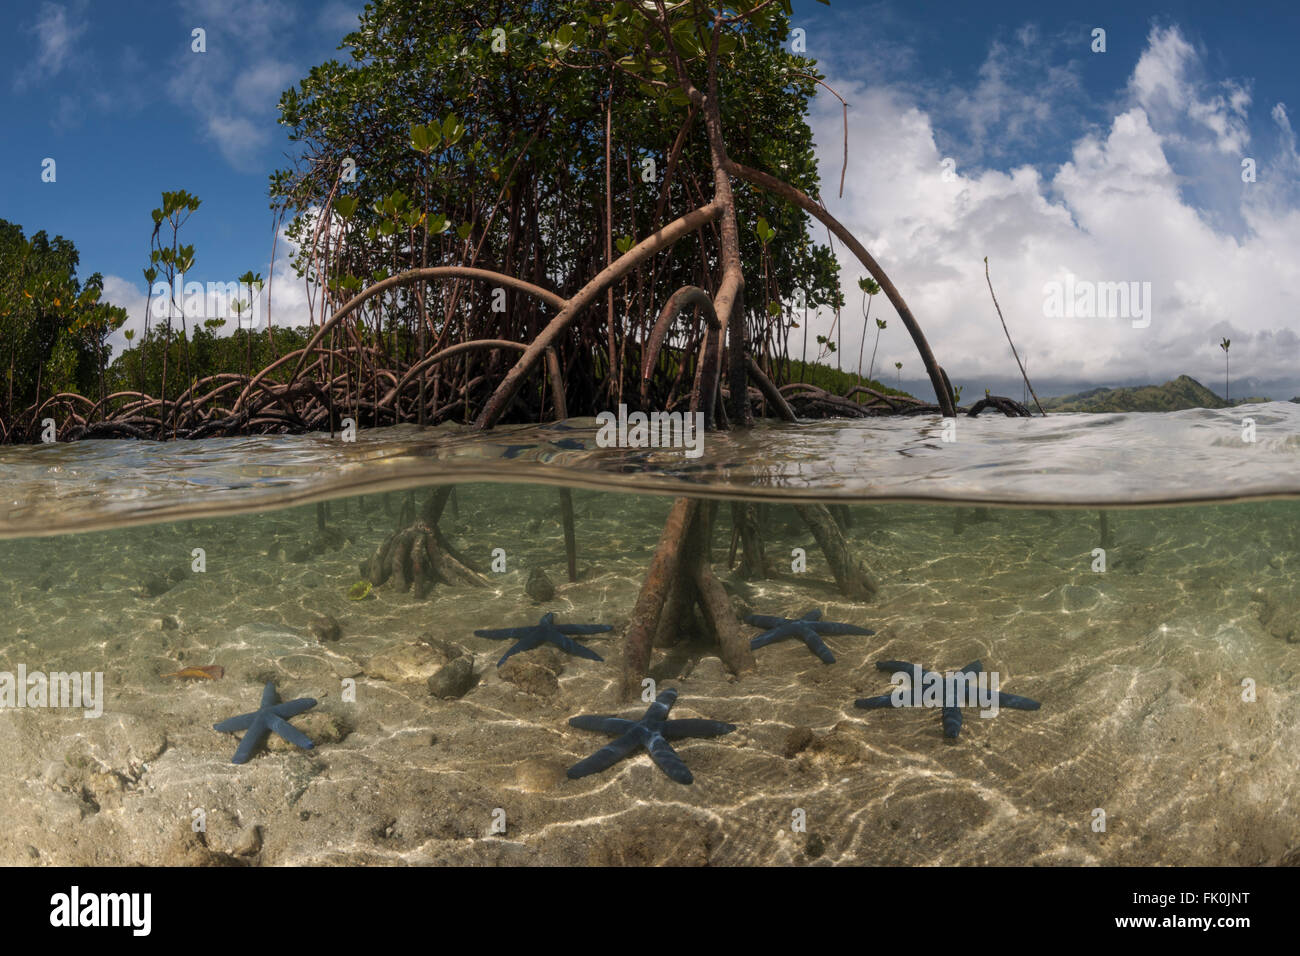 A livello diviso - blue starfish (Linckia laevigata) sparsi in shallow sabbie bianche e un albero di mangrovie con le sue radici aeree Foto Stock